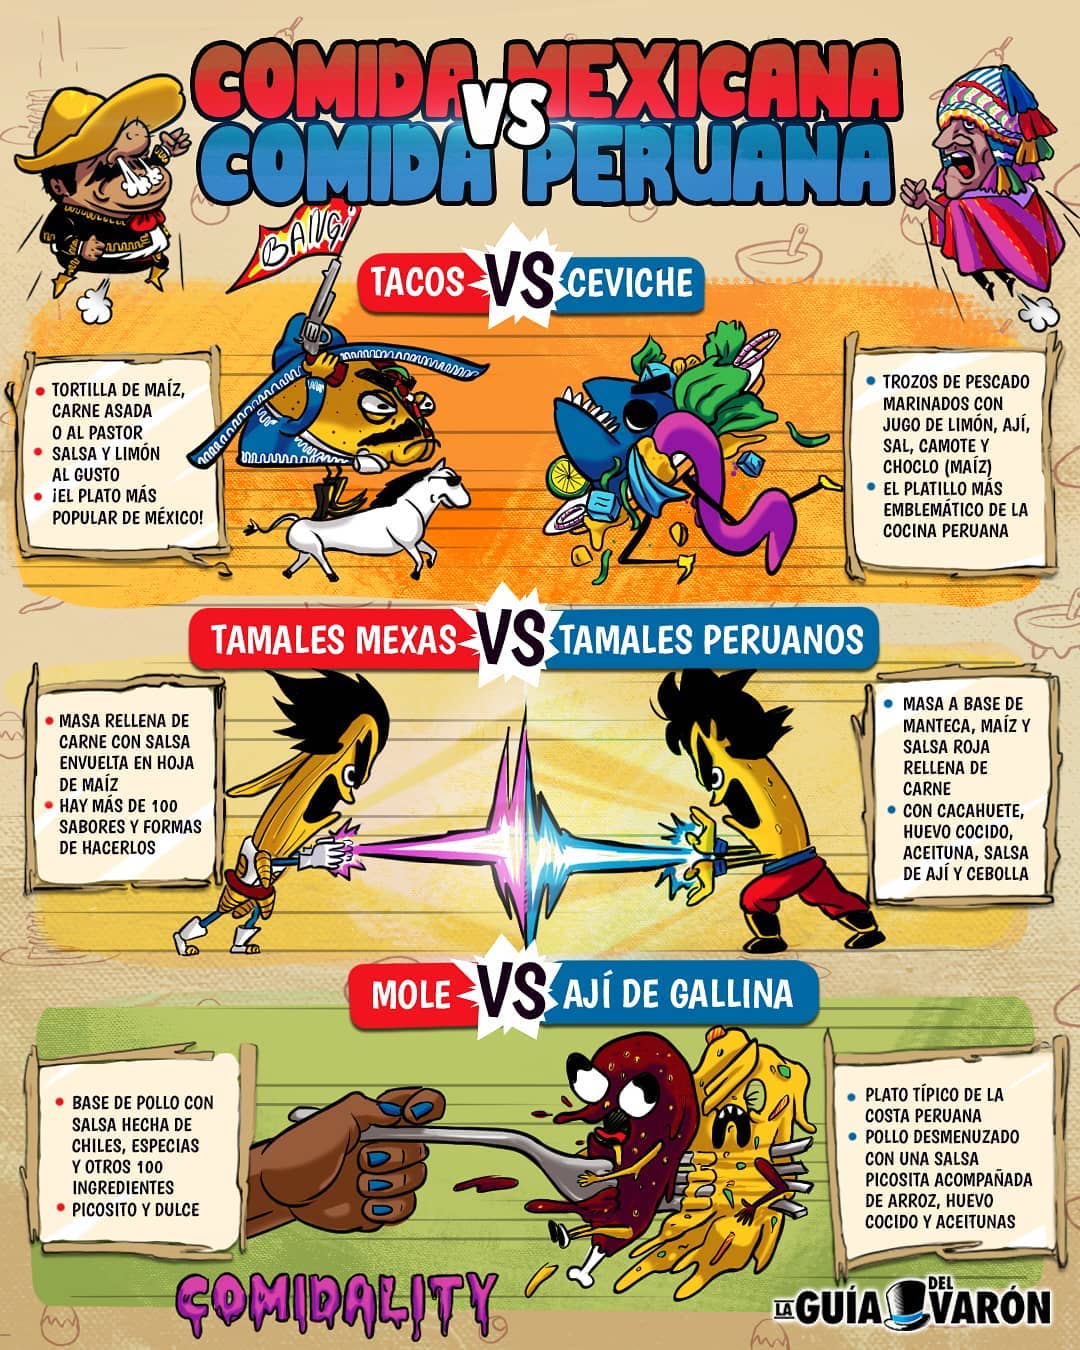 Comedia mexicana vs Comedia peruana.